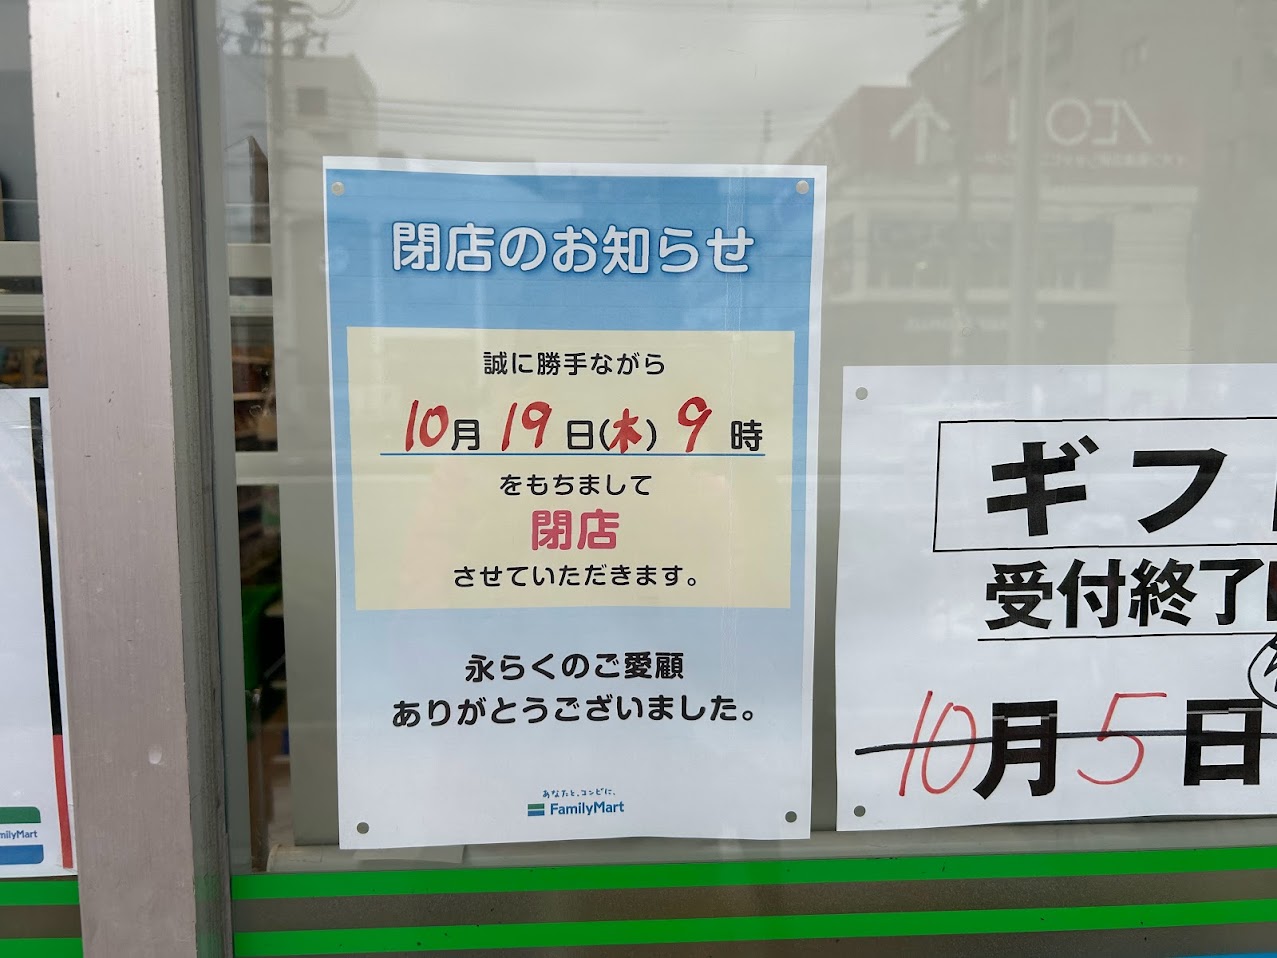 ファミリーマート喜連二丁目店閉店のお知らせ